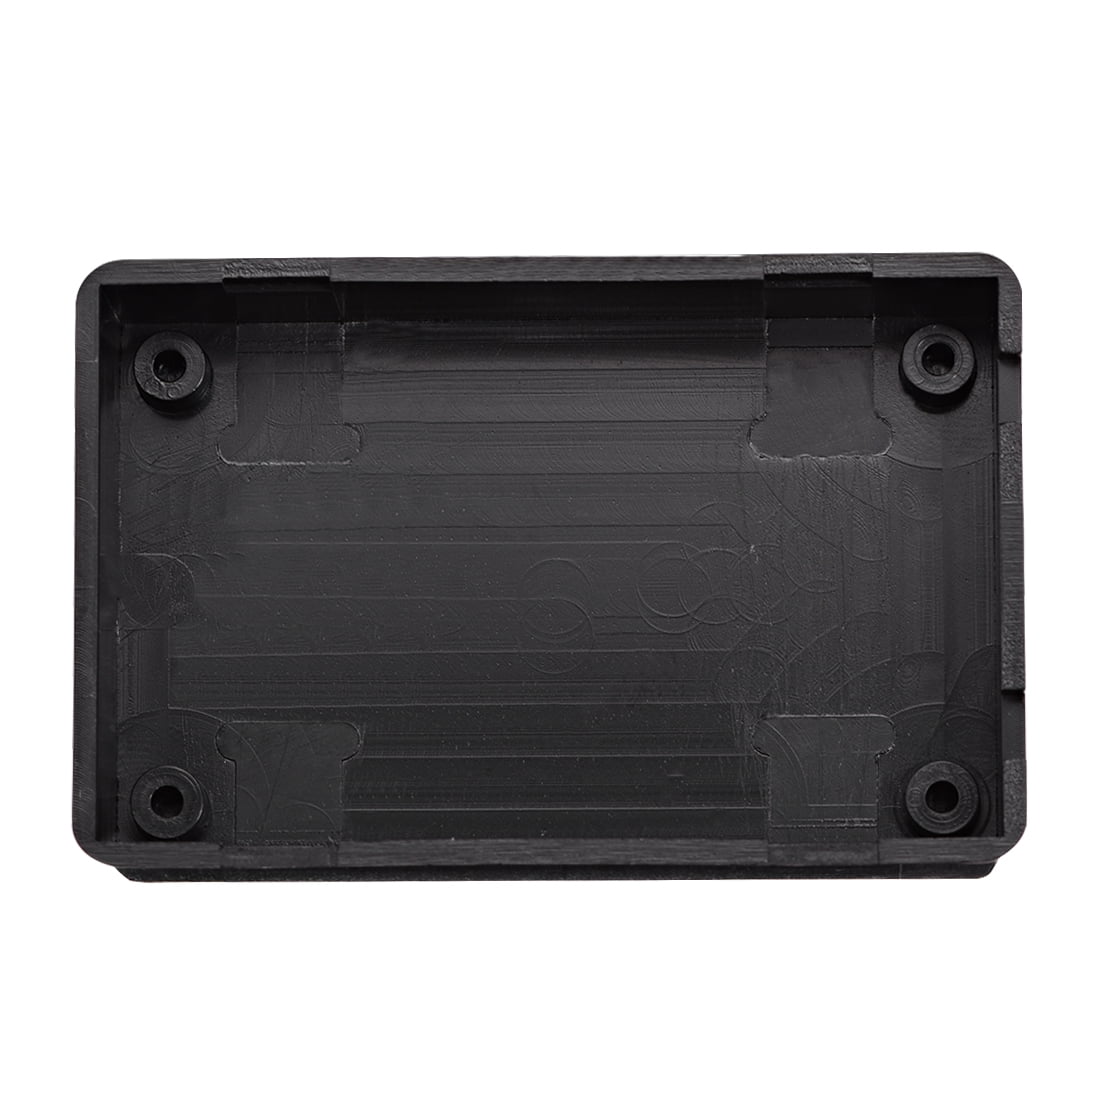 2pcs 70 x 42 x 18mm Electronic Plastic DIY Junction Box Enclosure Case Black 